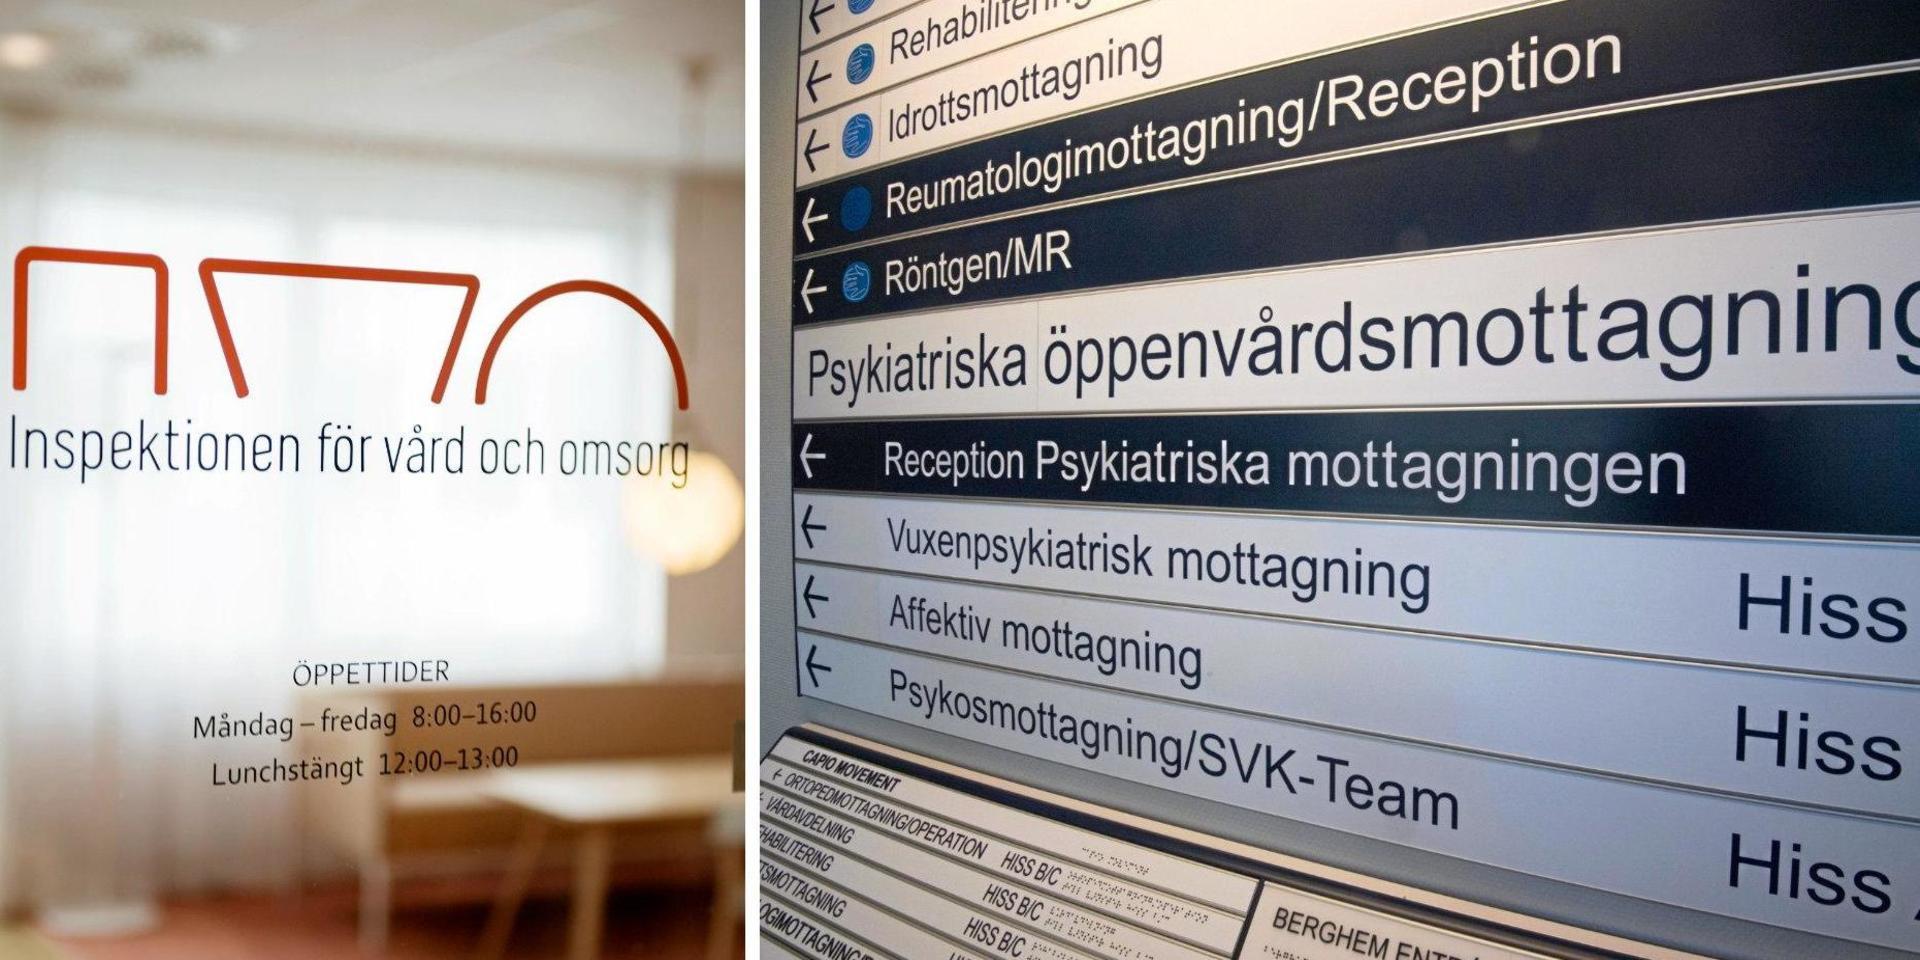 Inspektionen för vård och omsorg ser allvarliga brister hos vuxenpsykiatrimottagningen i Halmstad och den läkare som flera gånger dröjt med att skriva ut recept så att patienten stod utan mediciner.